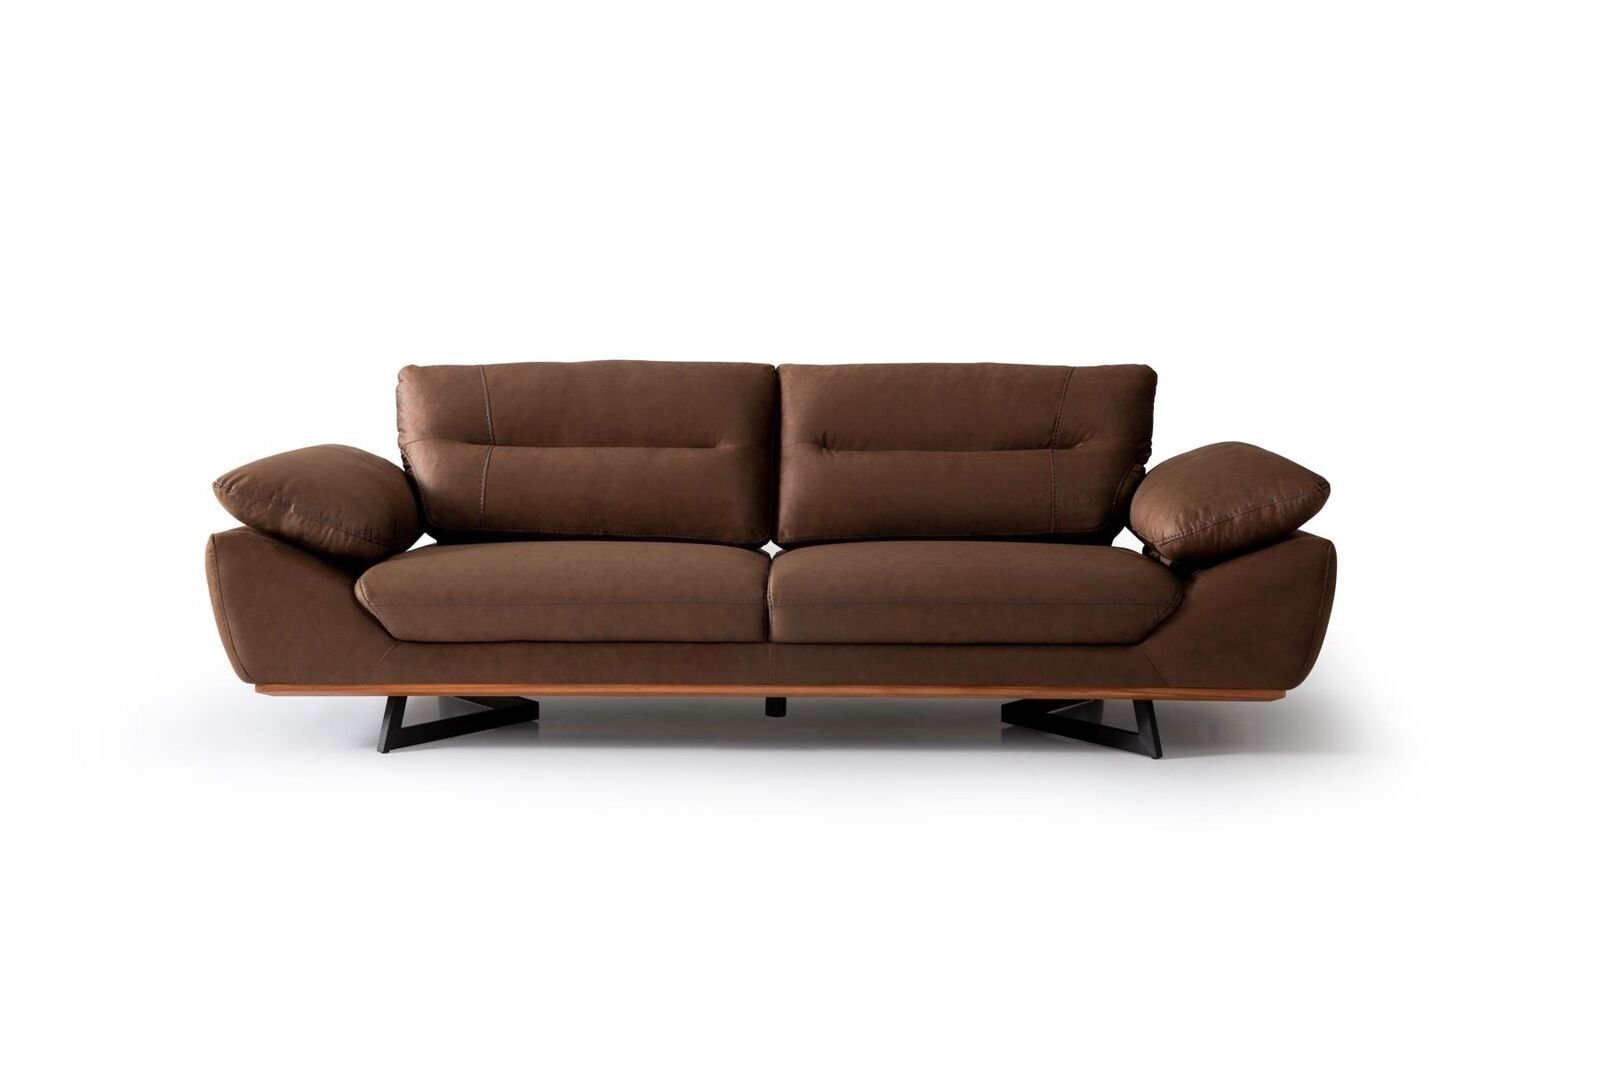 JVmoebel 3-Sitzer Designer Sofa 3 Sitzer 240cm xxl Couch Polster Sofas Design Braun, 1 Teile, Made in Europa